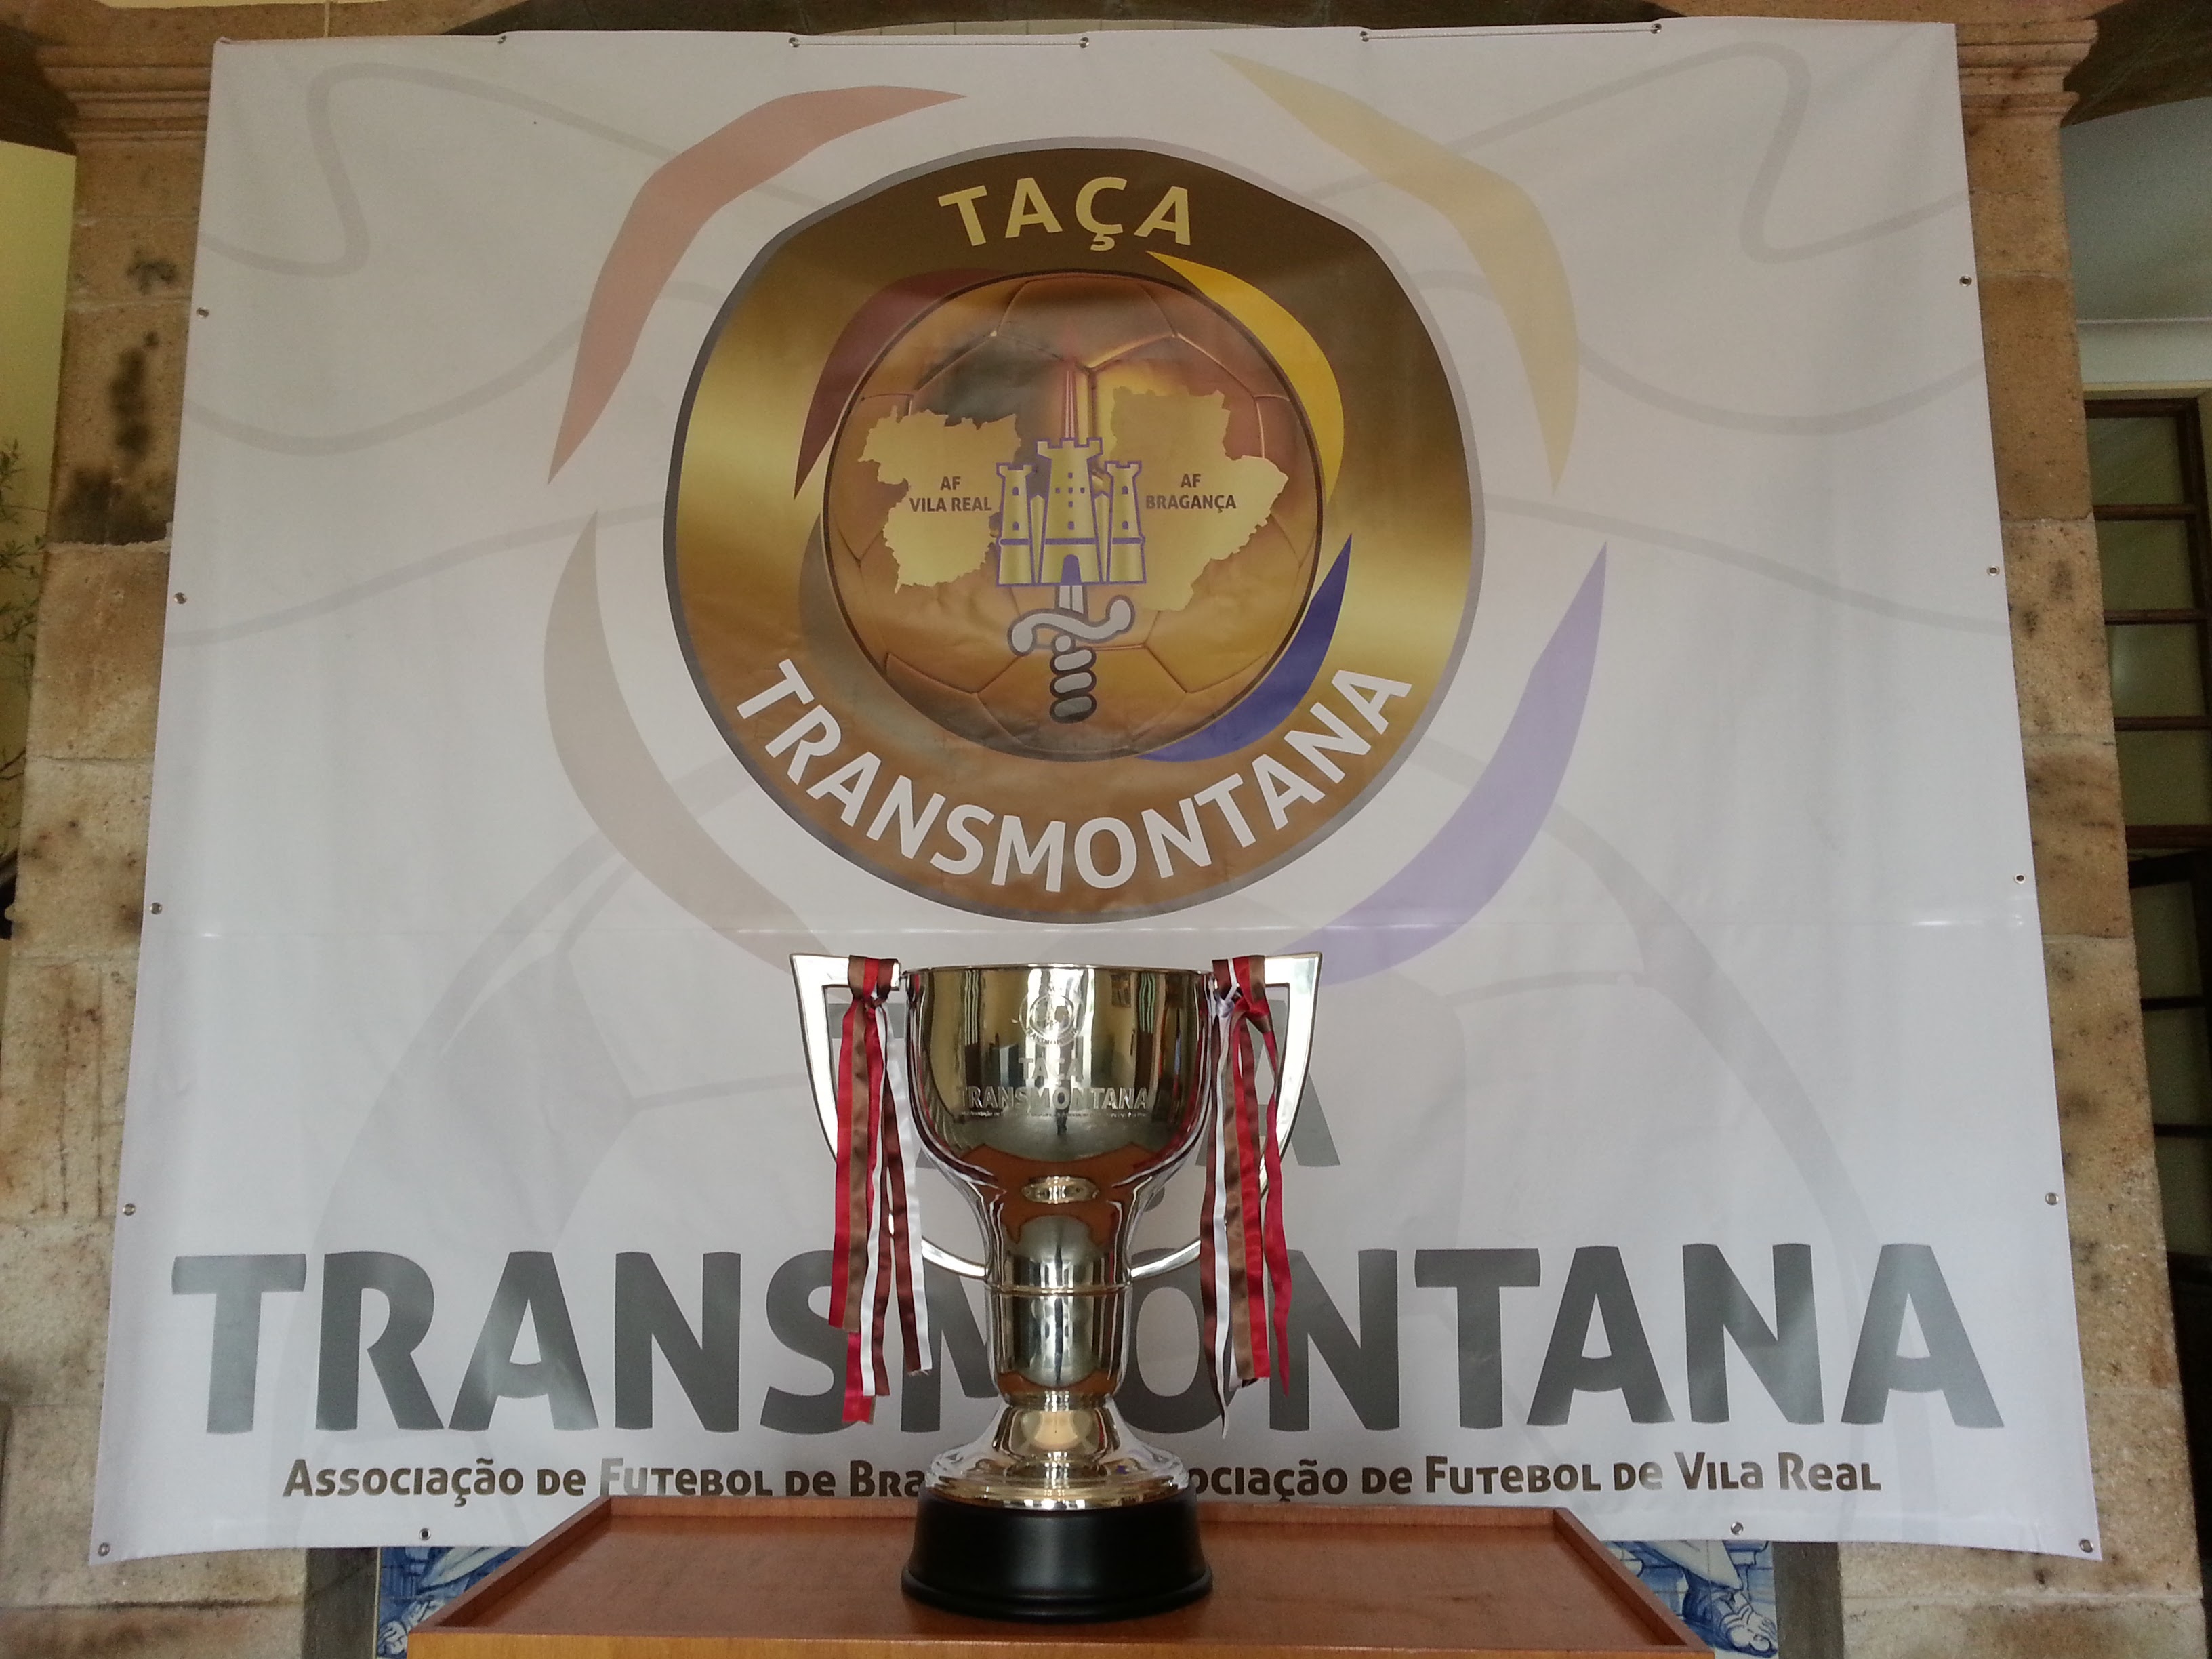 1ª Jornada da Taça Transmontana